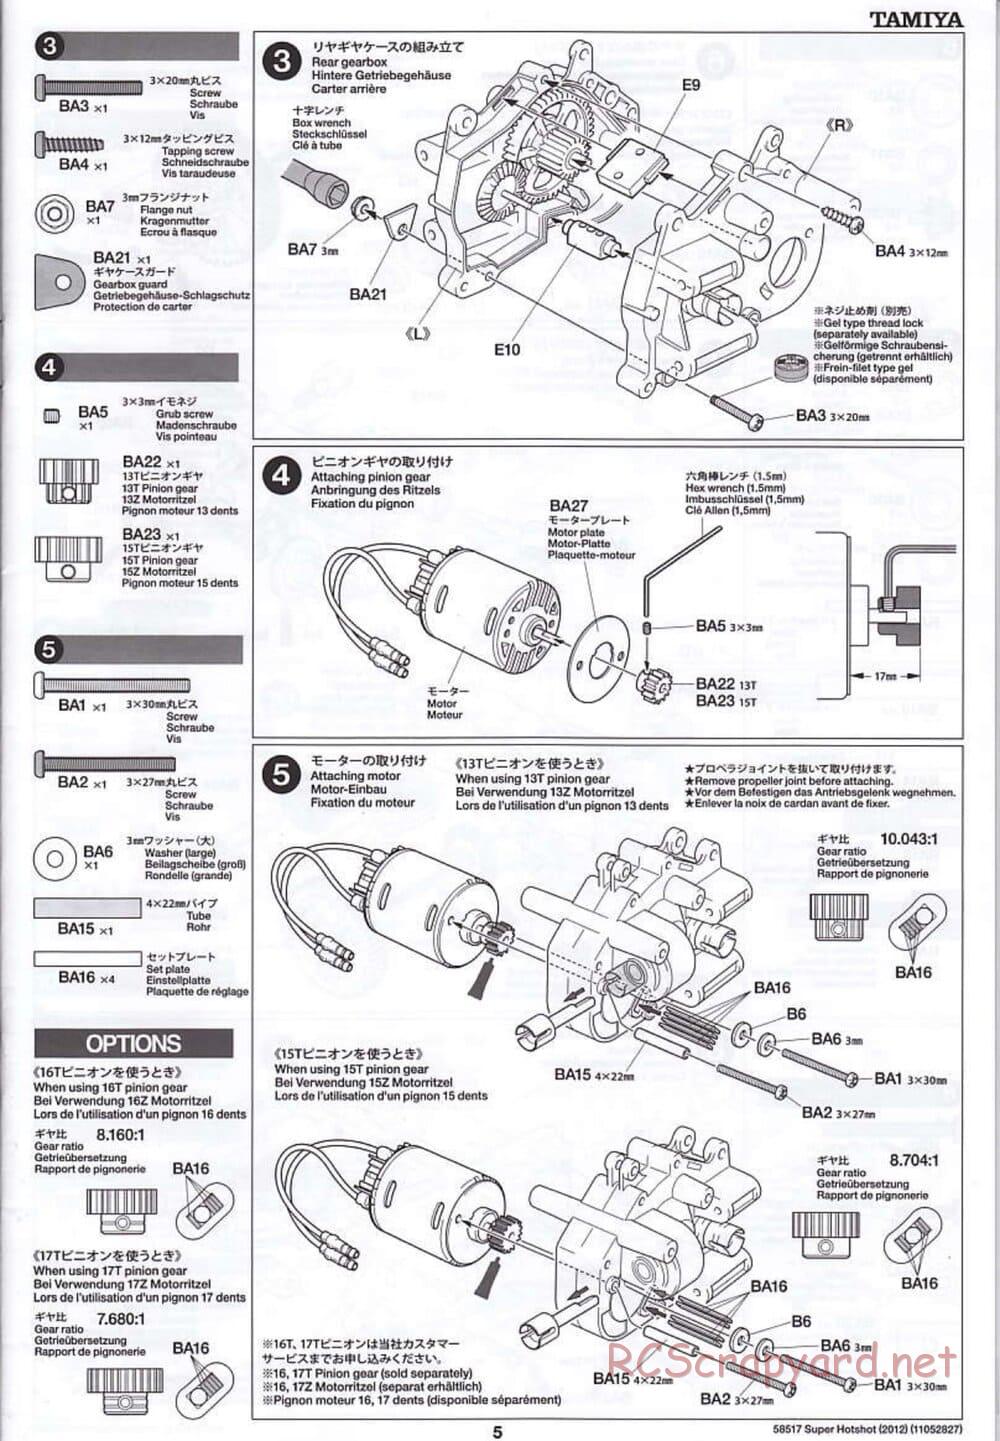 Tamiya - Super Hotshot 2012 - HS Chassis - Manual - Page 5